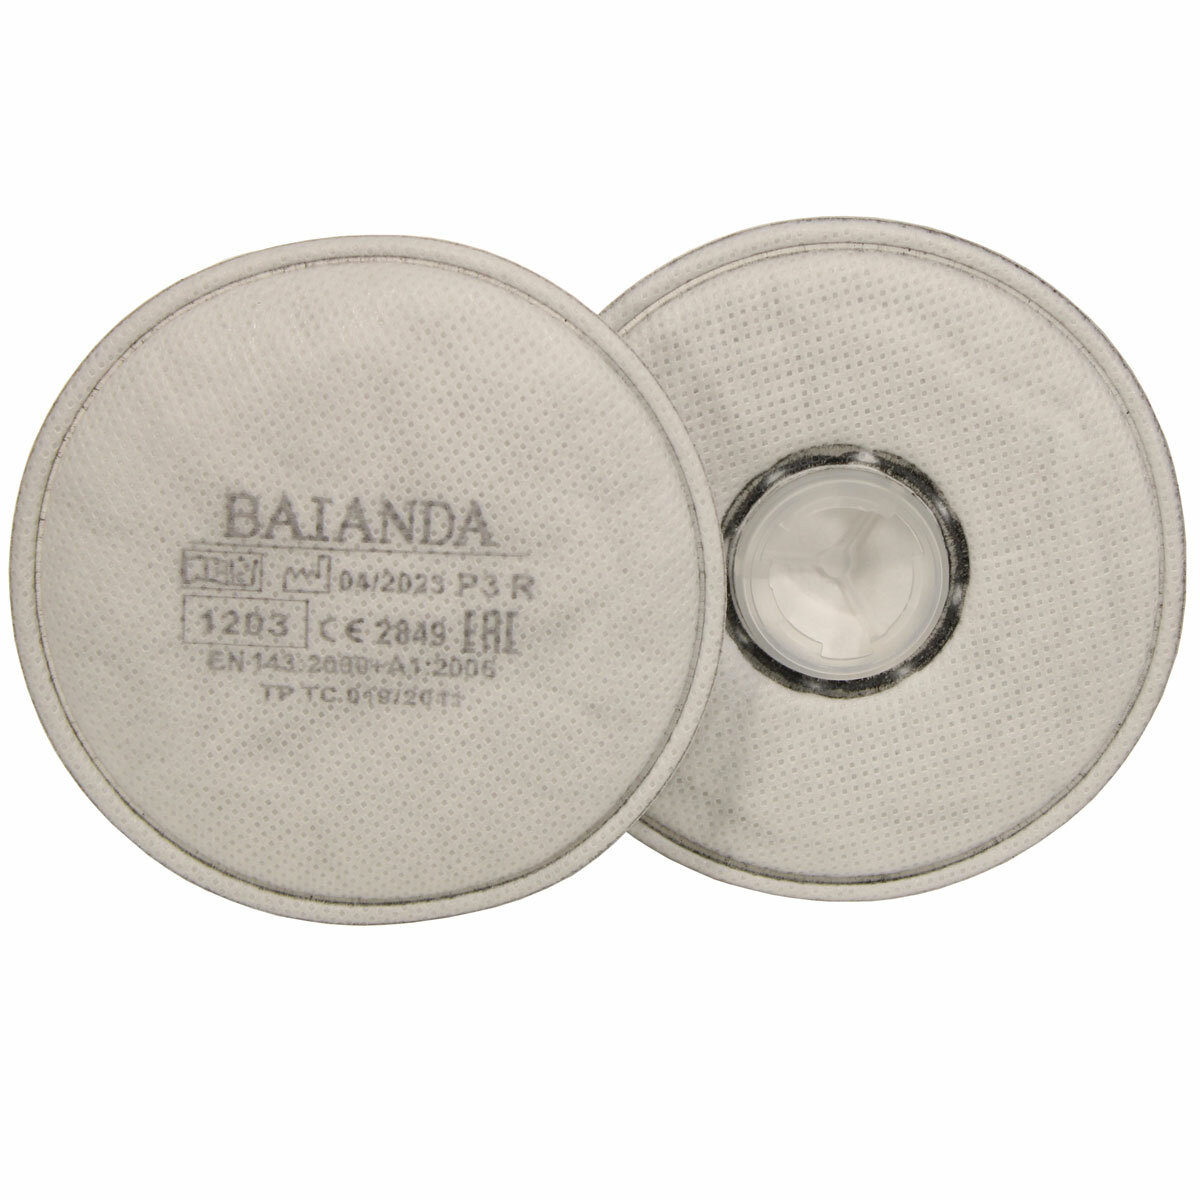 Фильтр для защиты от твердых и жидких частиц органические пары BAIANDA 1203 P3R 2 шт/уп